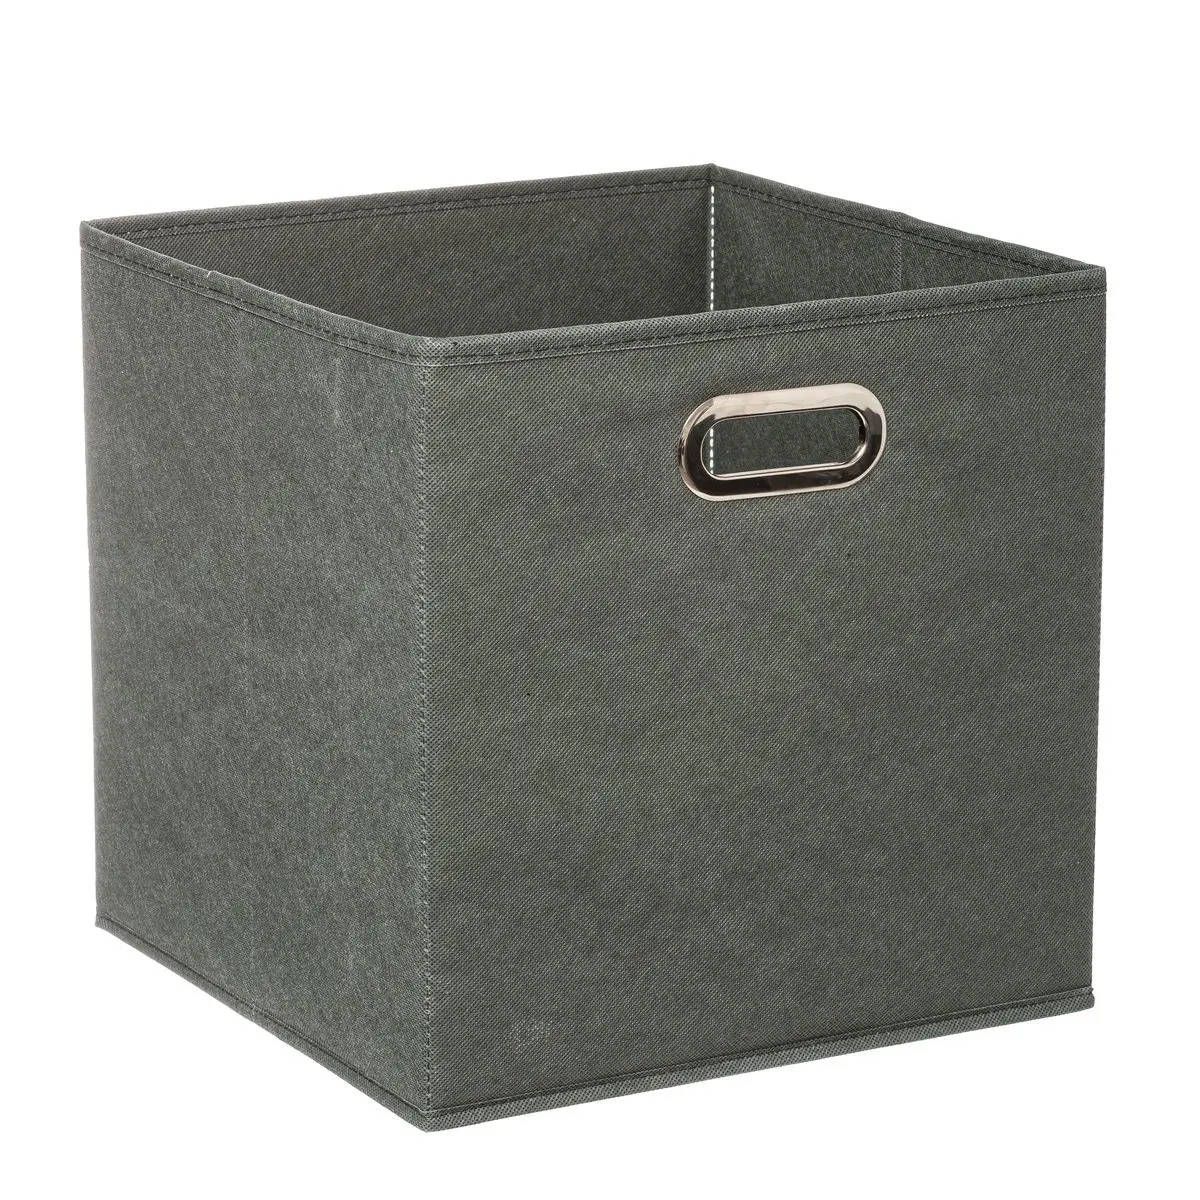 5five Simply Smart Úložný box, šedý, textilní, 31 x 31 cm - EMAKO.CZ s.r.o.